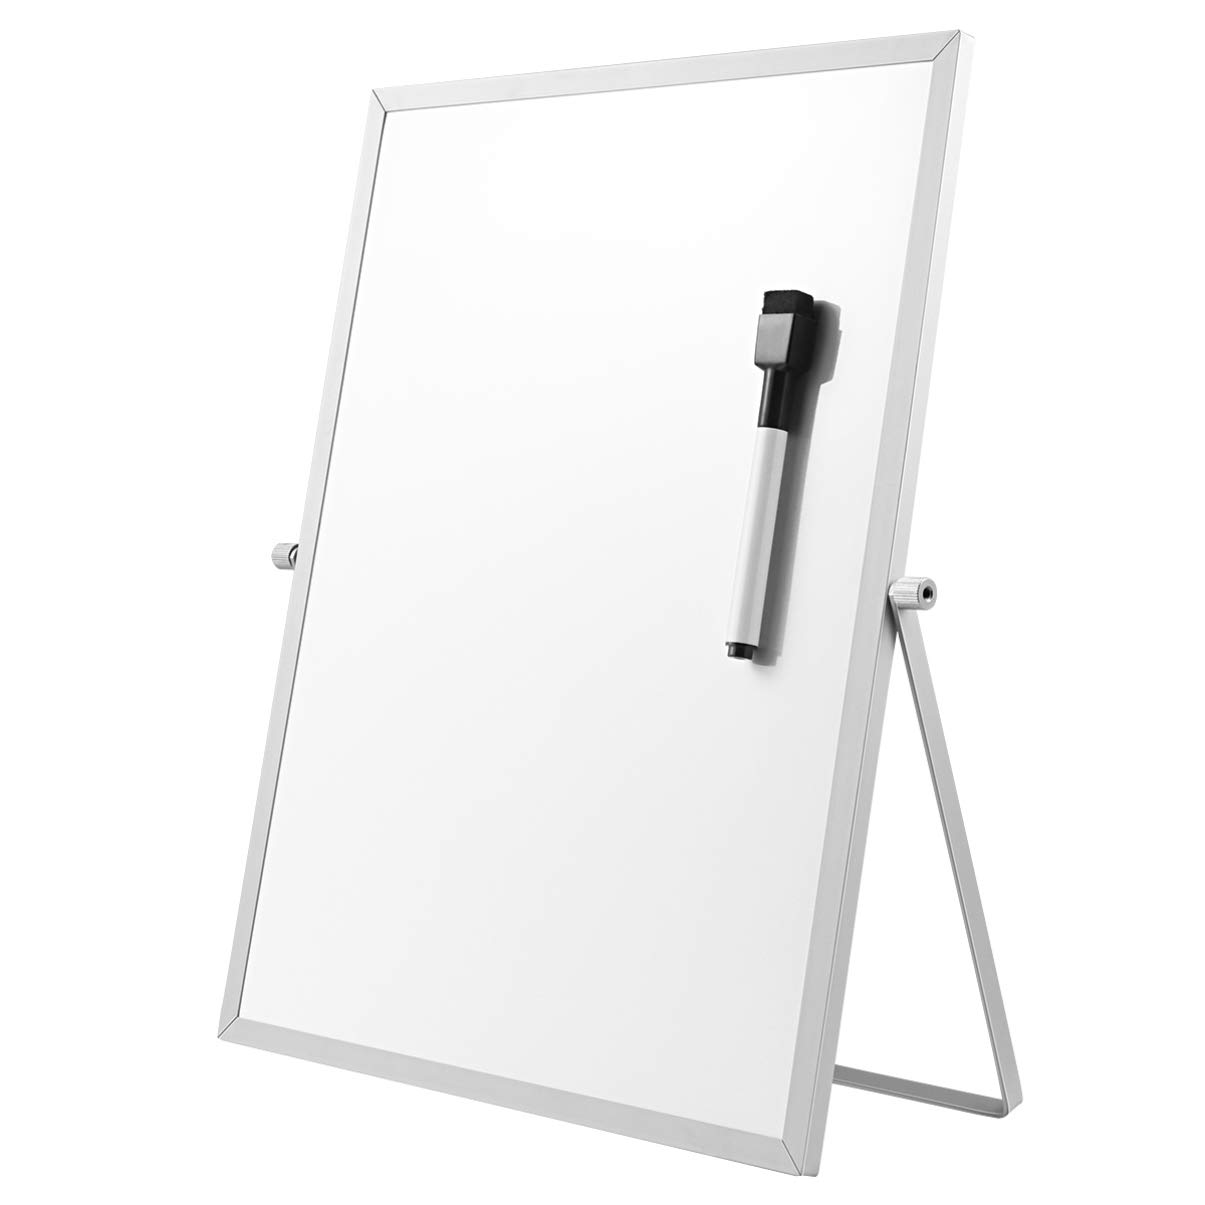 STOBOK Trockene Magnetische Kleines Whiteboard - 36cm x 26cm Tragbare doppelseitige weiße Board Desktop Ständer mit Marker, 360 Grad drehbare Halterung, tun für Kinder Zeichnung, Büro Schule zu Hause